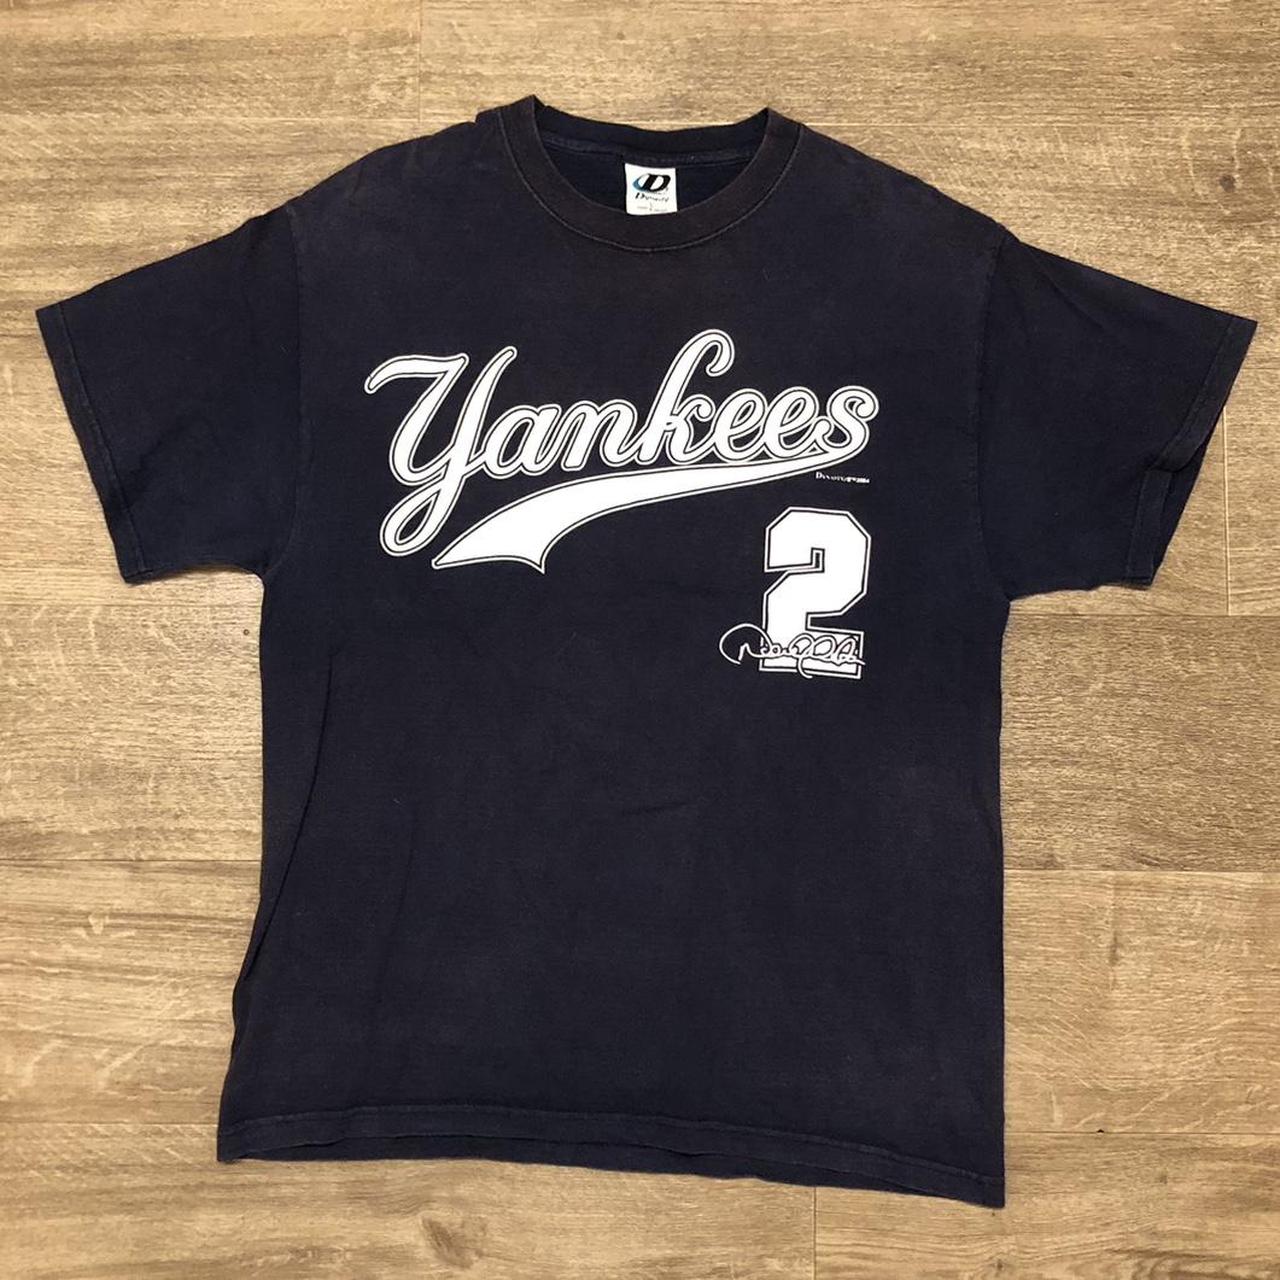 New York Yankees Derek Jeter The Captain All Time - Depop